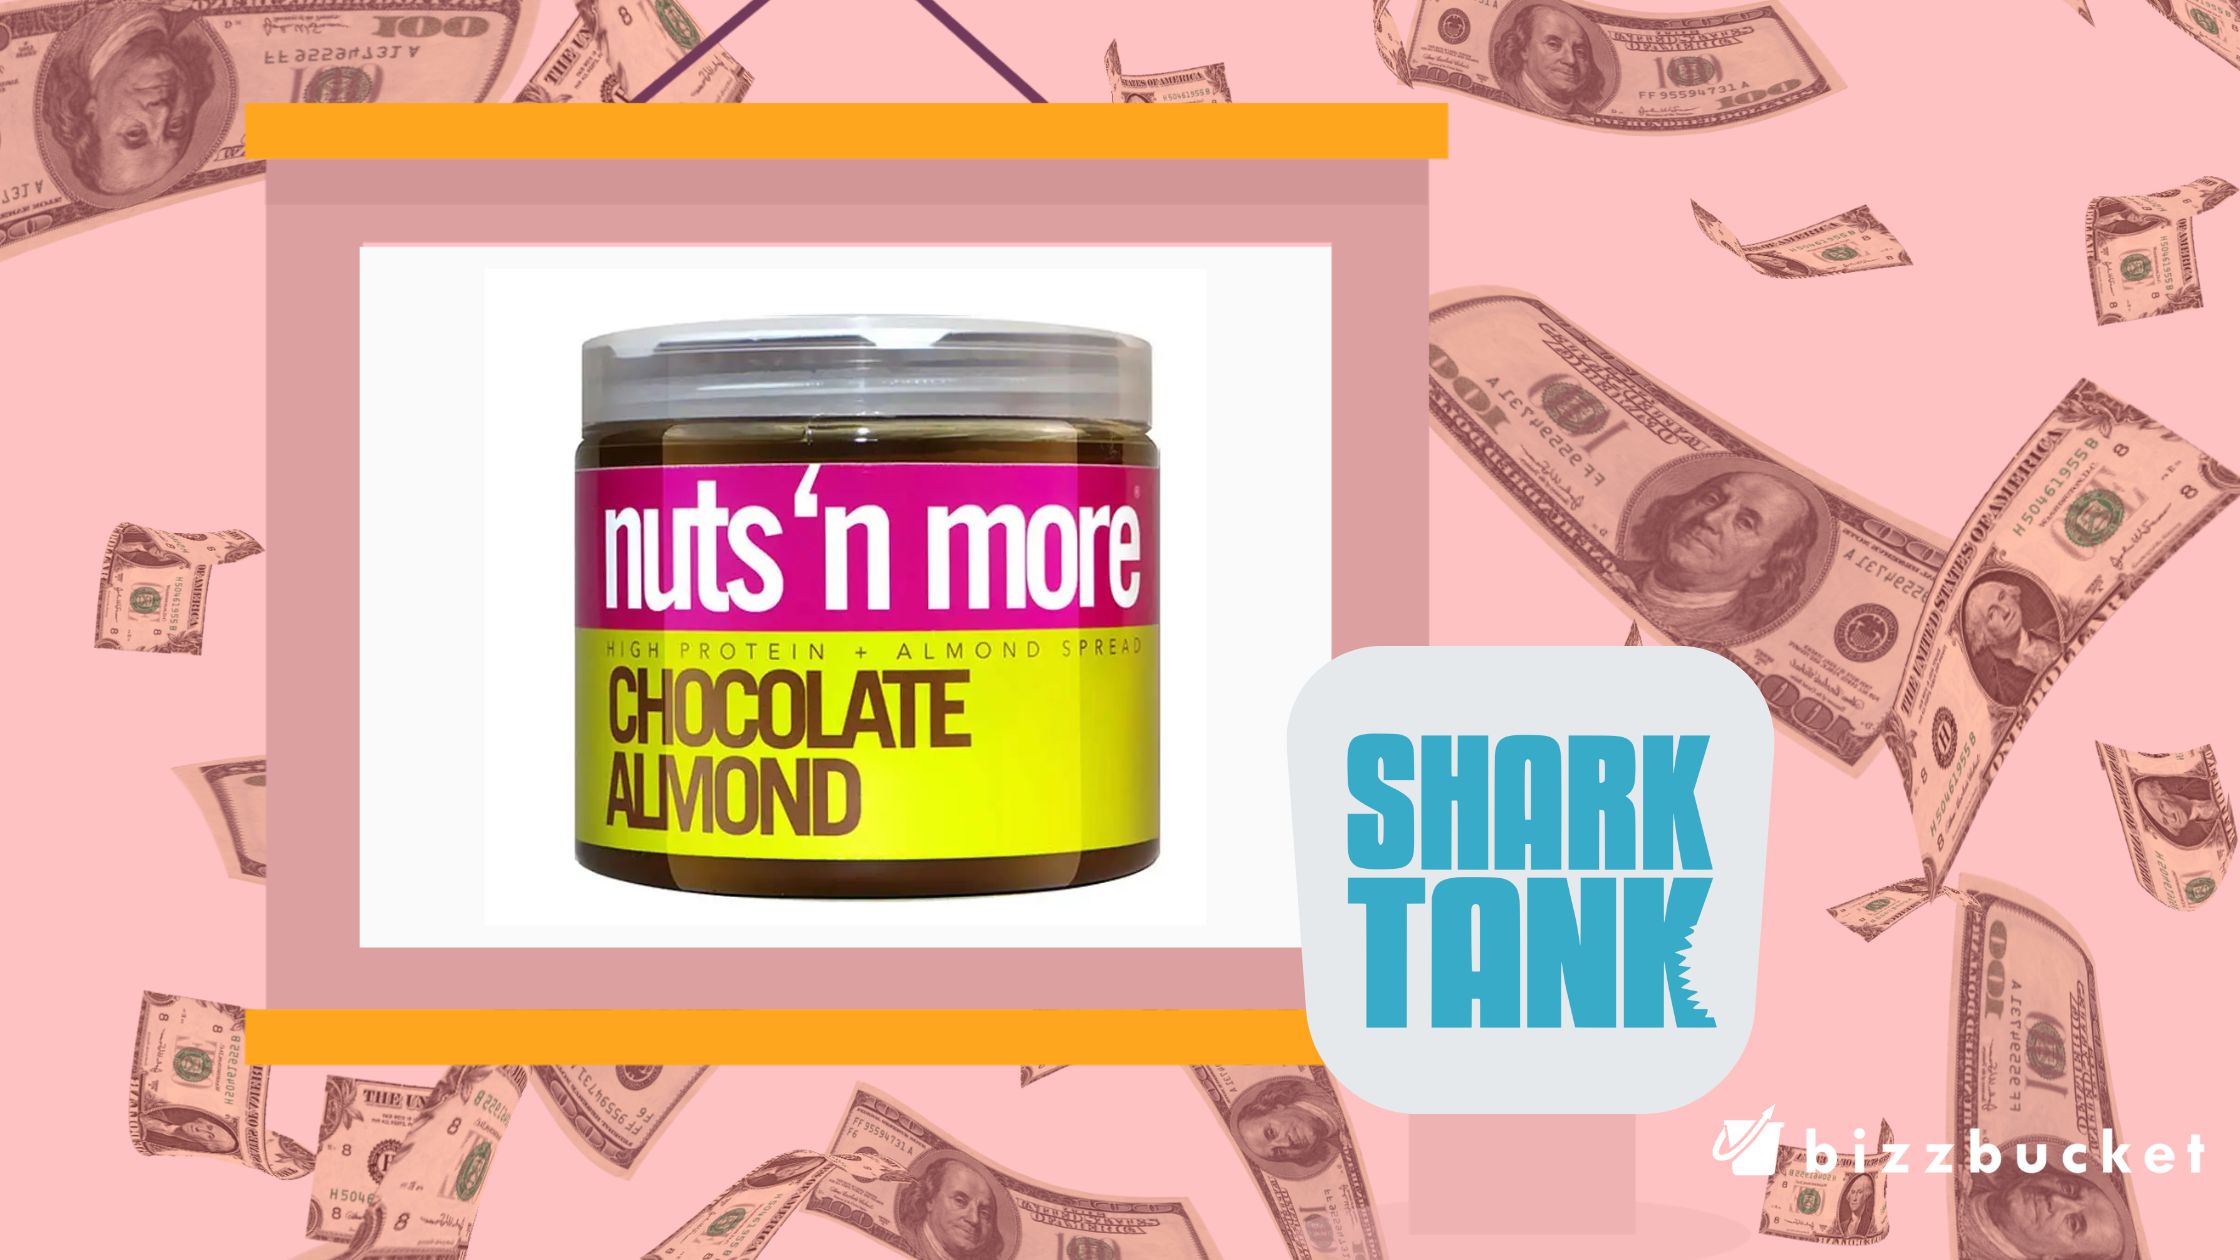 Nuts N More shark tank update